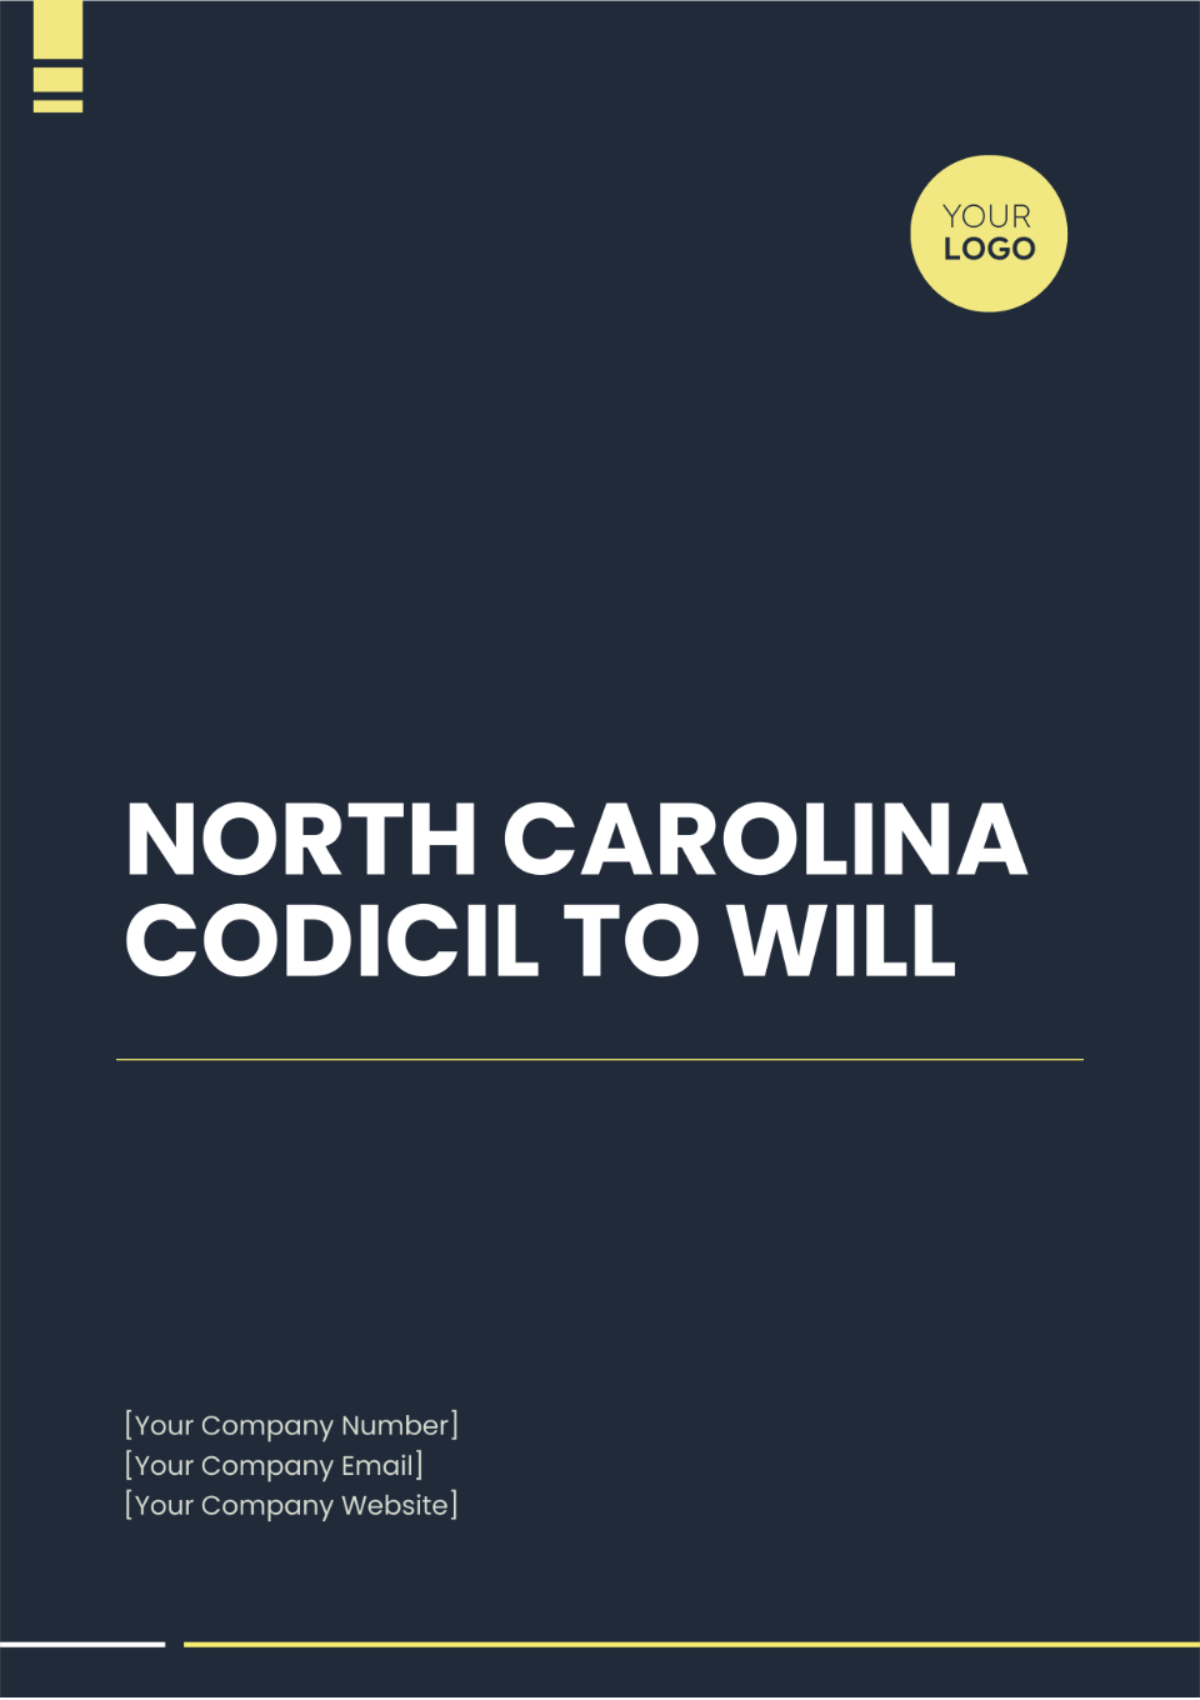 North Carolina Codicil to Will Template